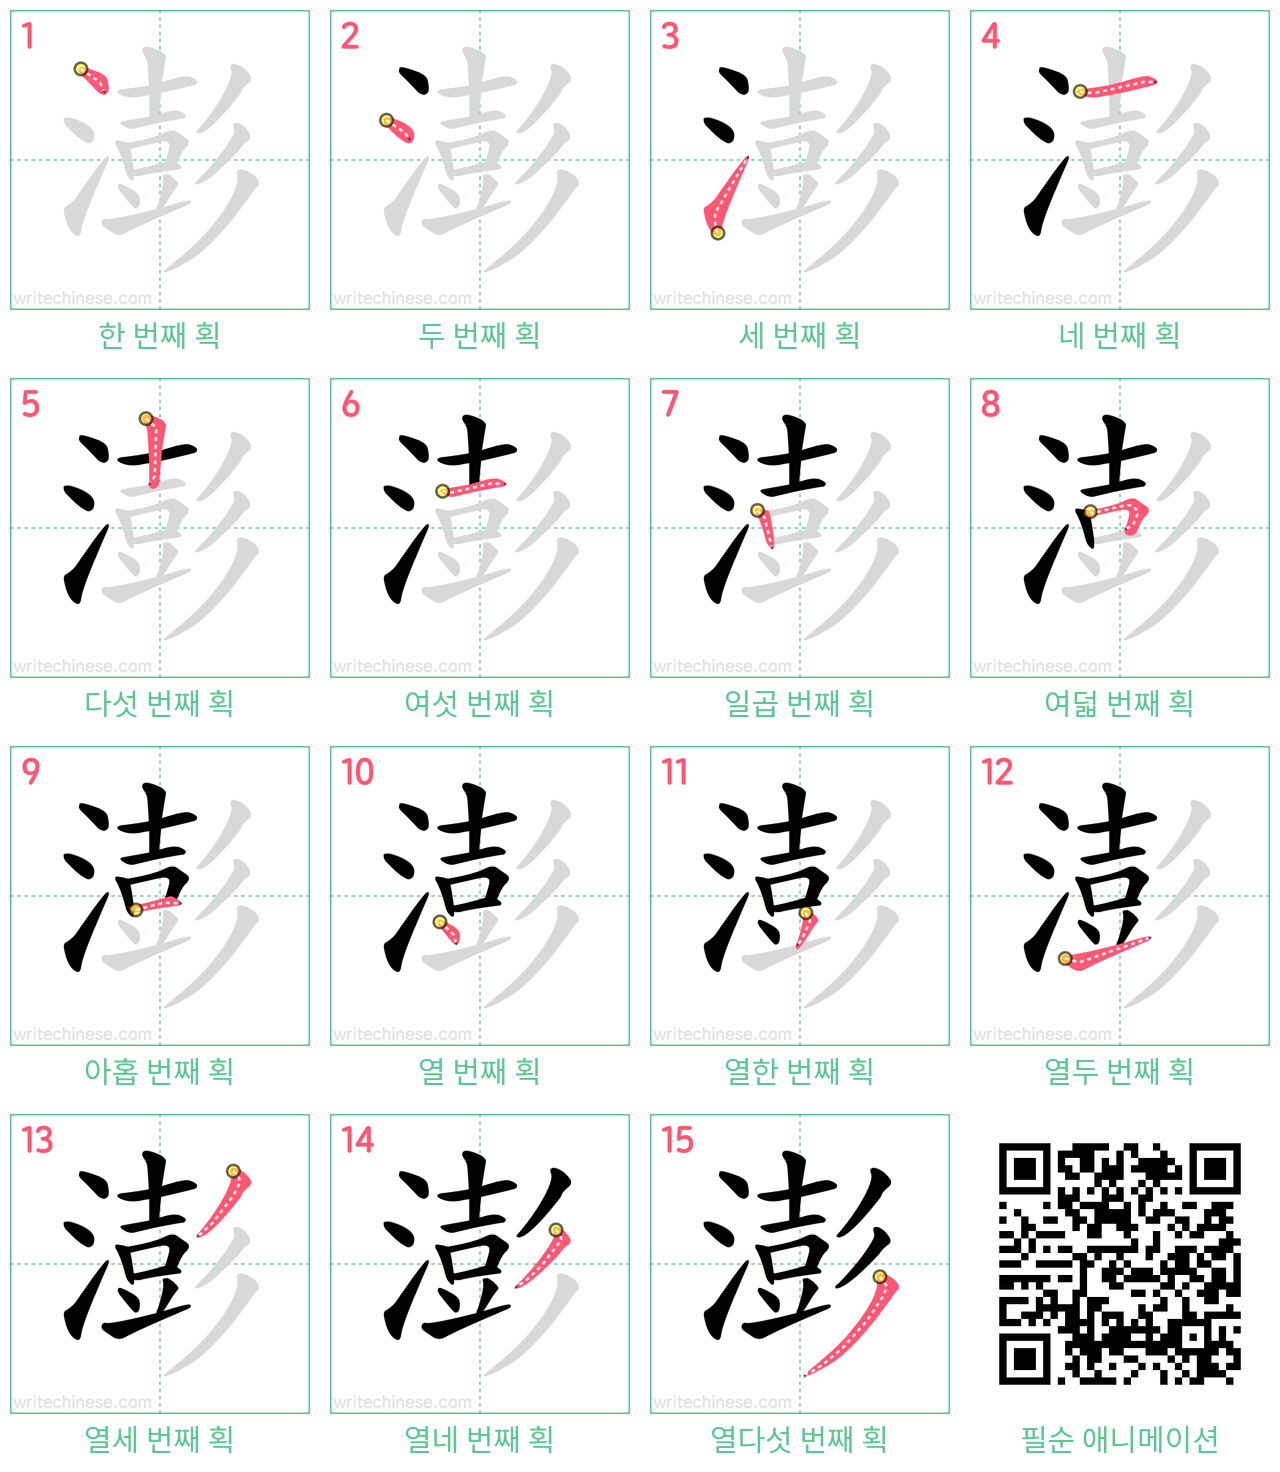 澎 step-by-step stroke order diagrams